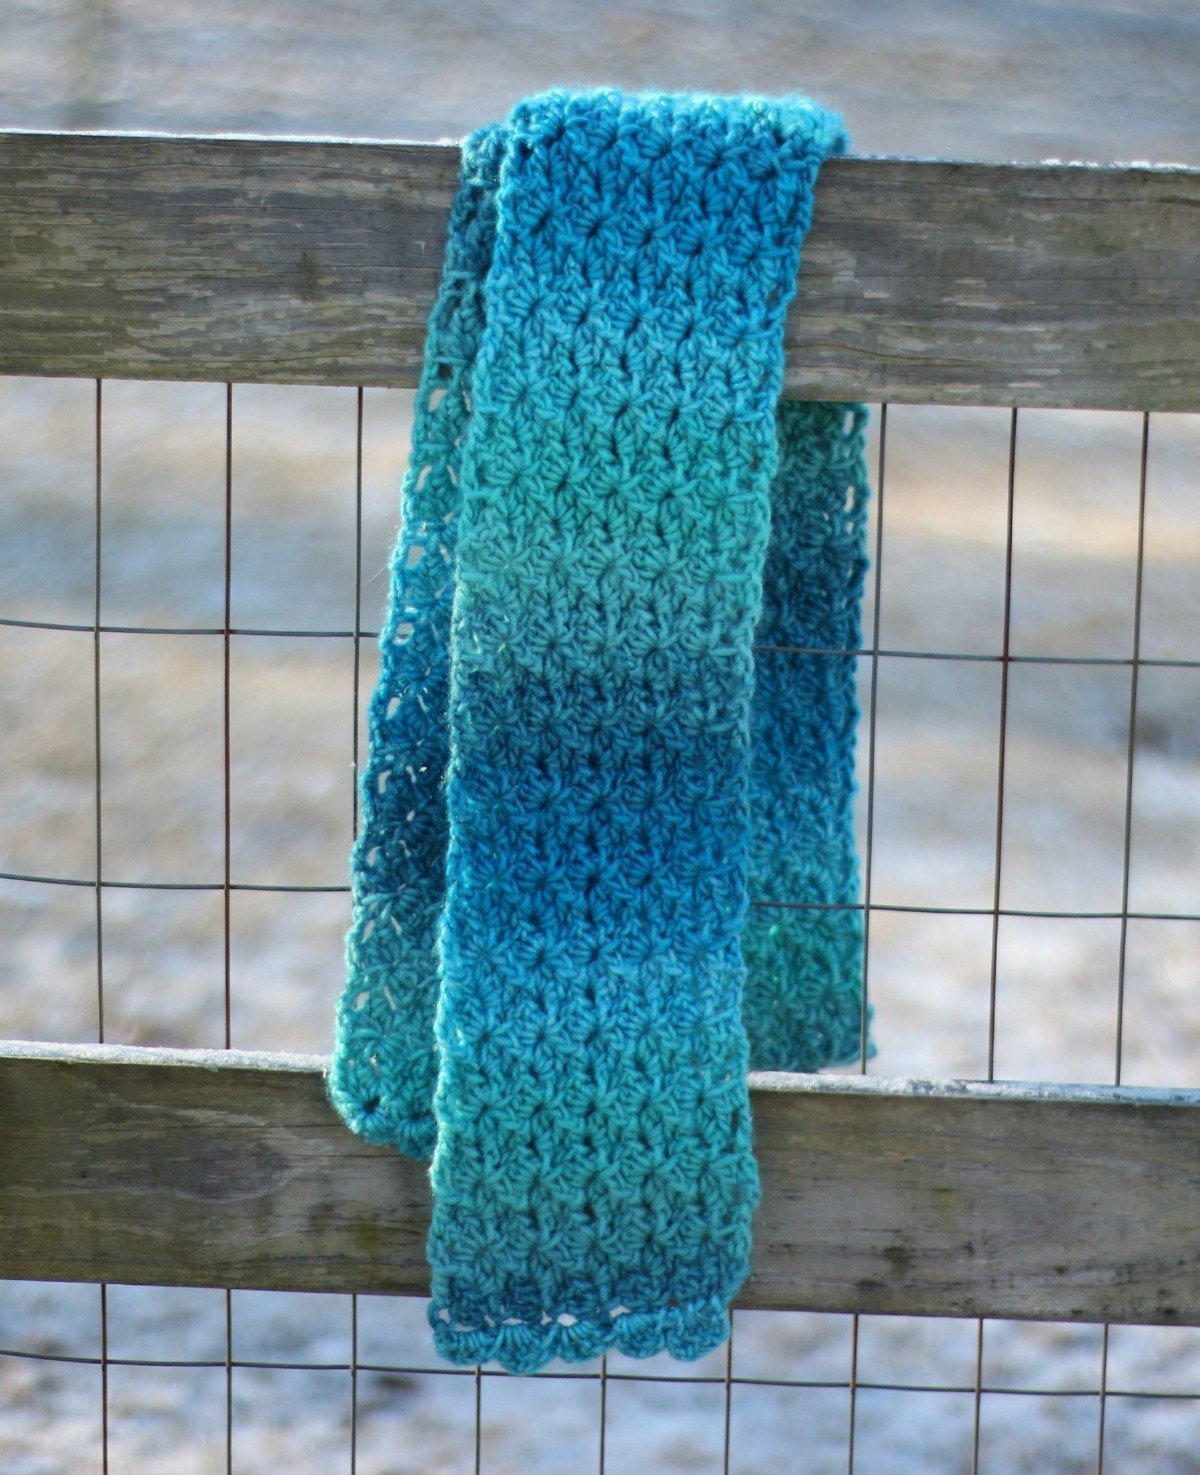 Duchess Lace Scarf - Free Crochet Pattern